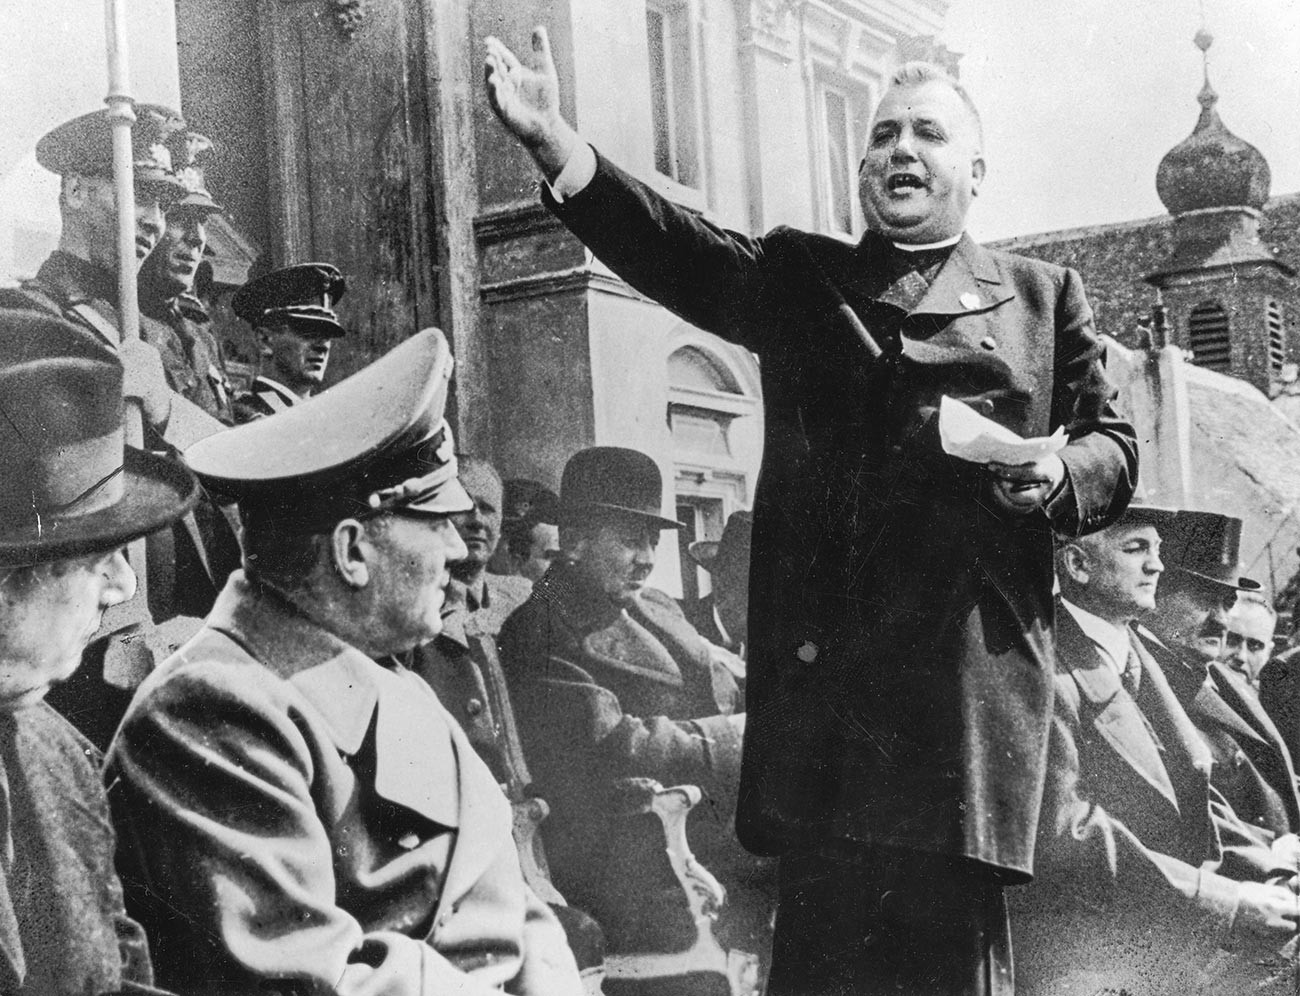 El sacerdote y líder político eslovaco Jozef Tiso recibe a los nazis en Eslovaquia, 1939.
